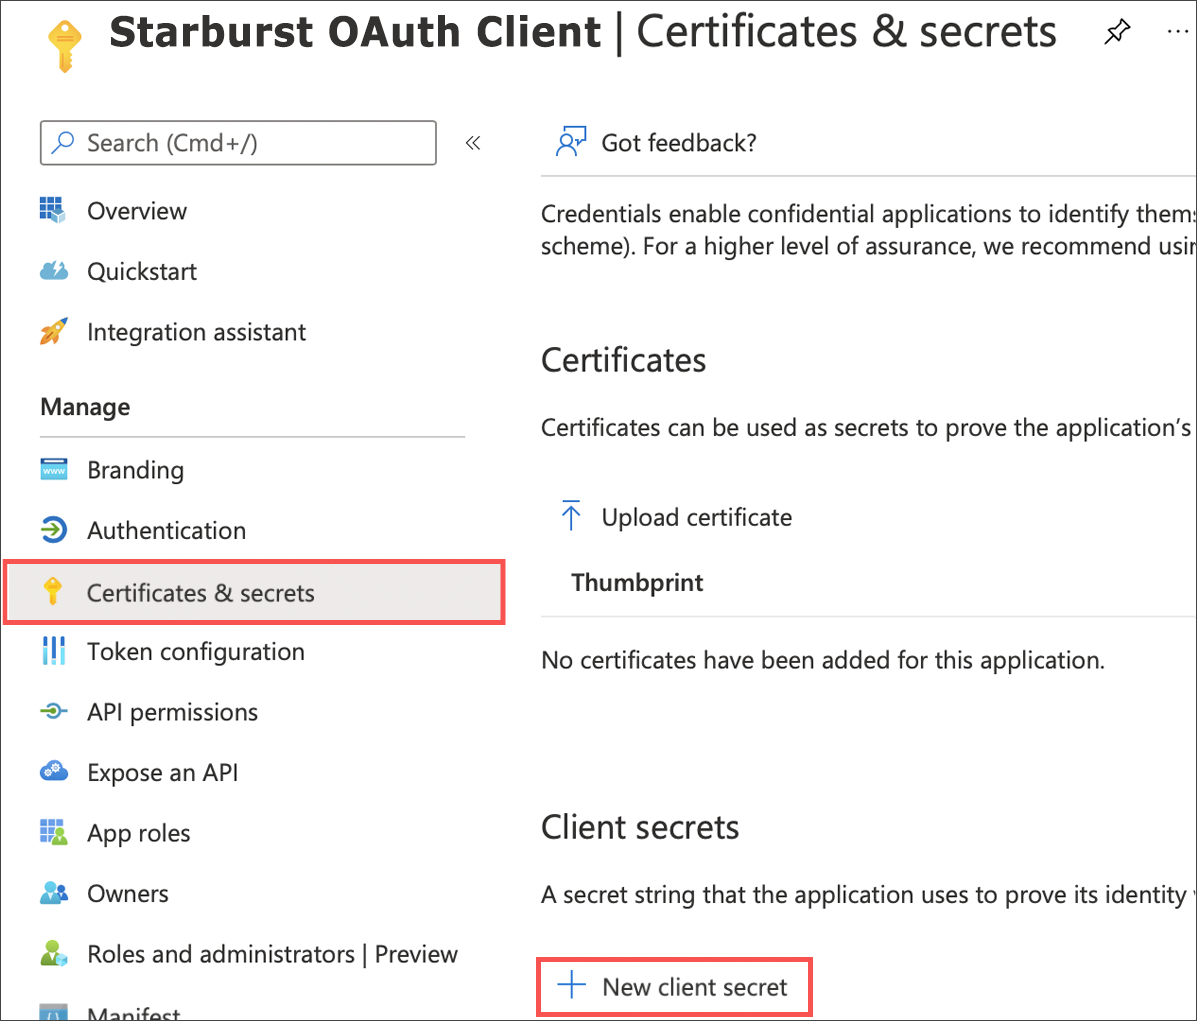 Select Certificates & secrets > New client secret